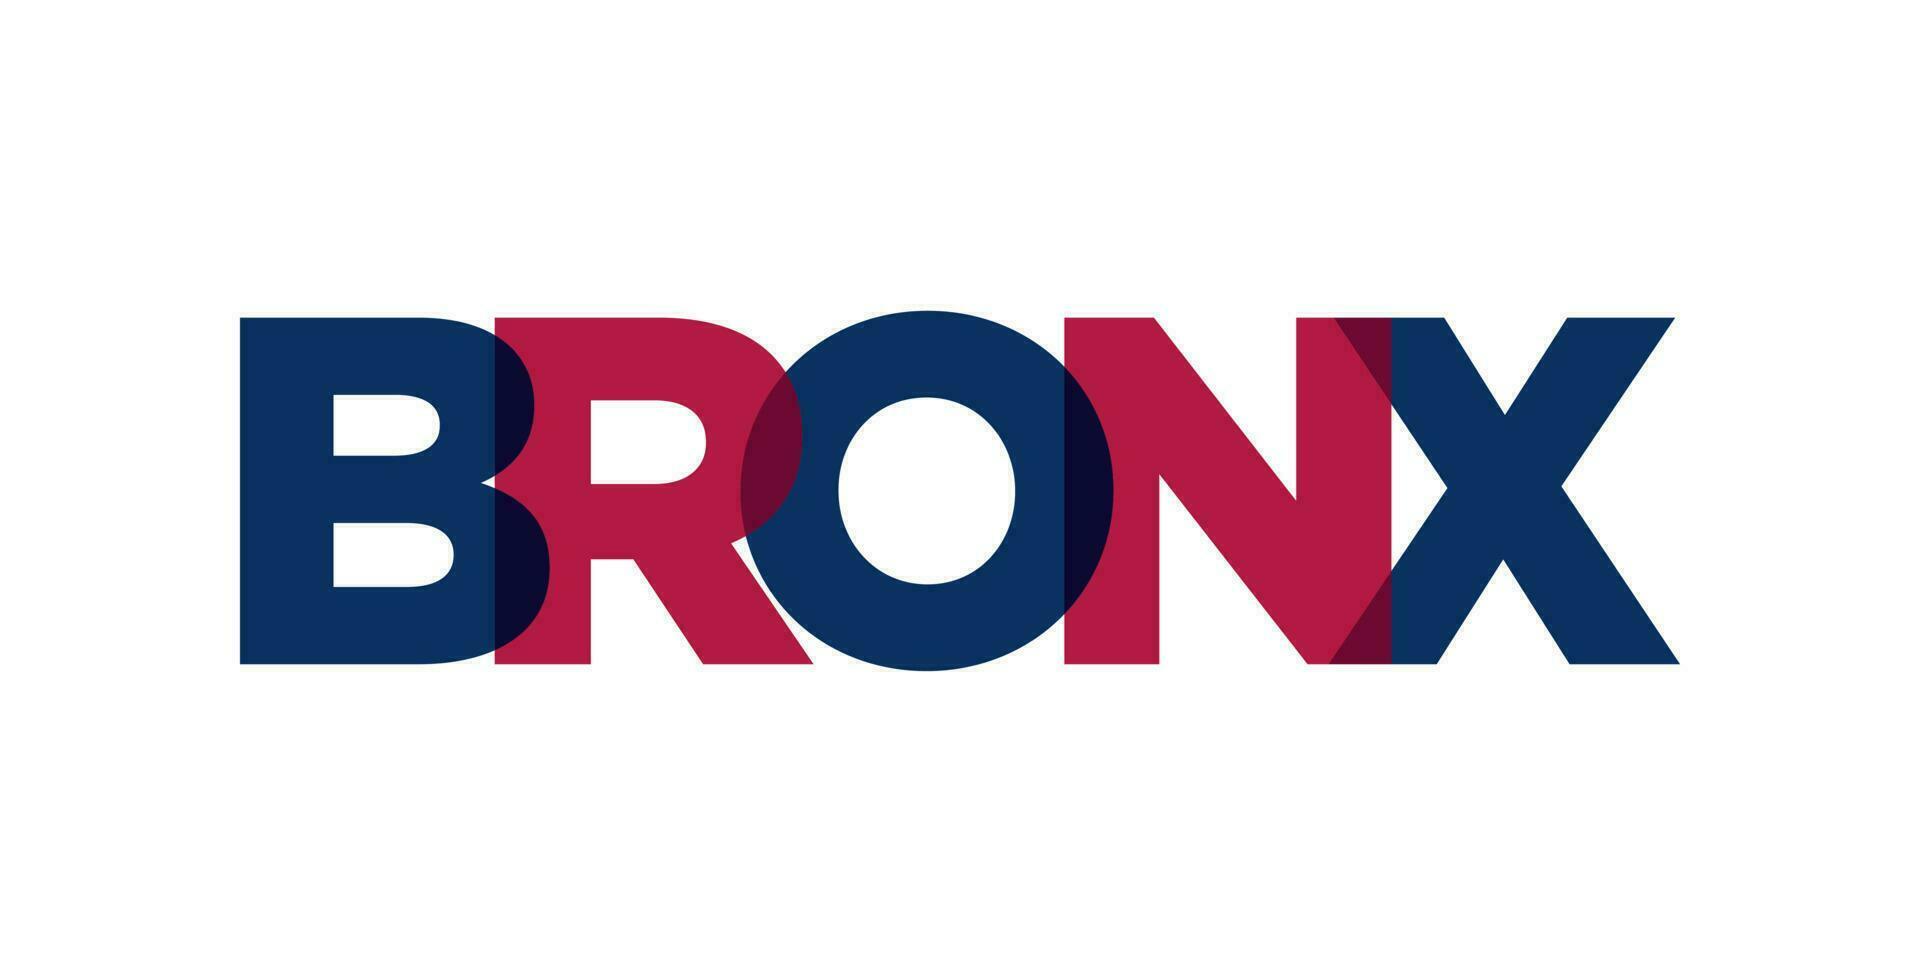 bronx, nieuw york, Verenigde Staten van Amerika typografie leuze ontwerp. Amerika logo met grafisch stad belettering voor afdrukken en web. vector